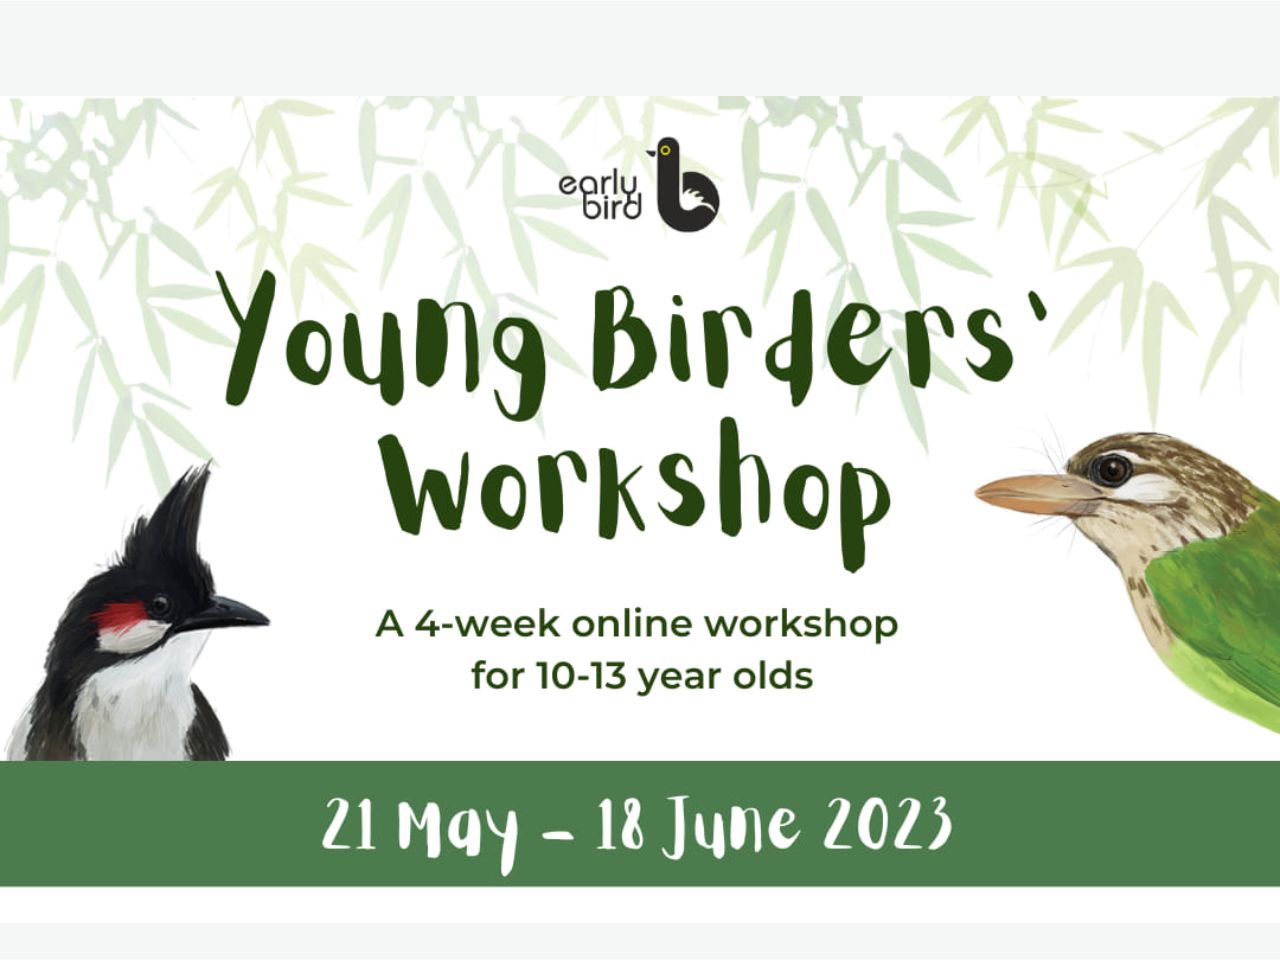 Young Birder's Workshop